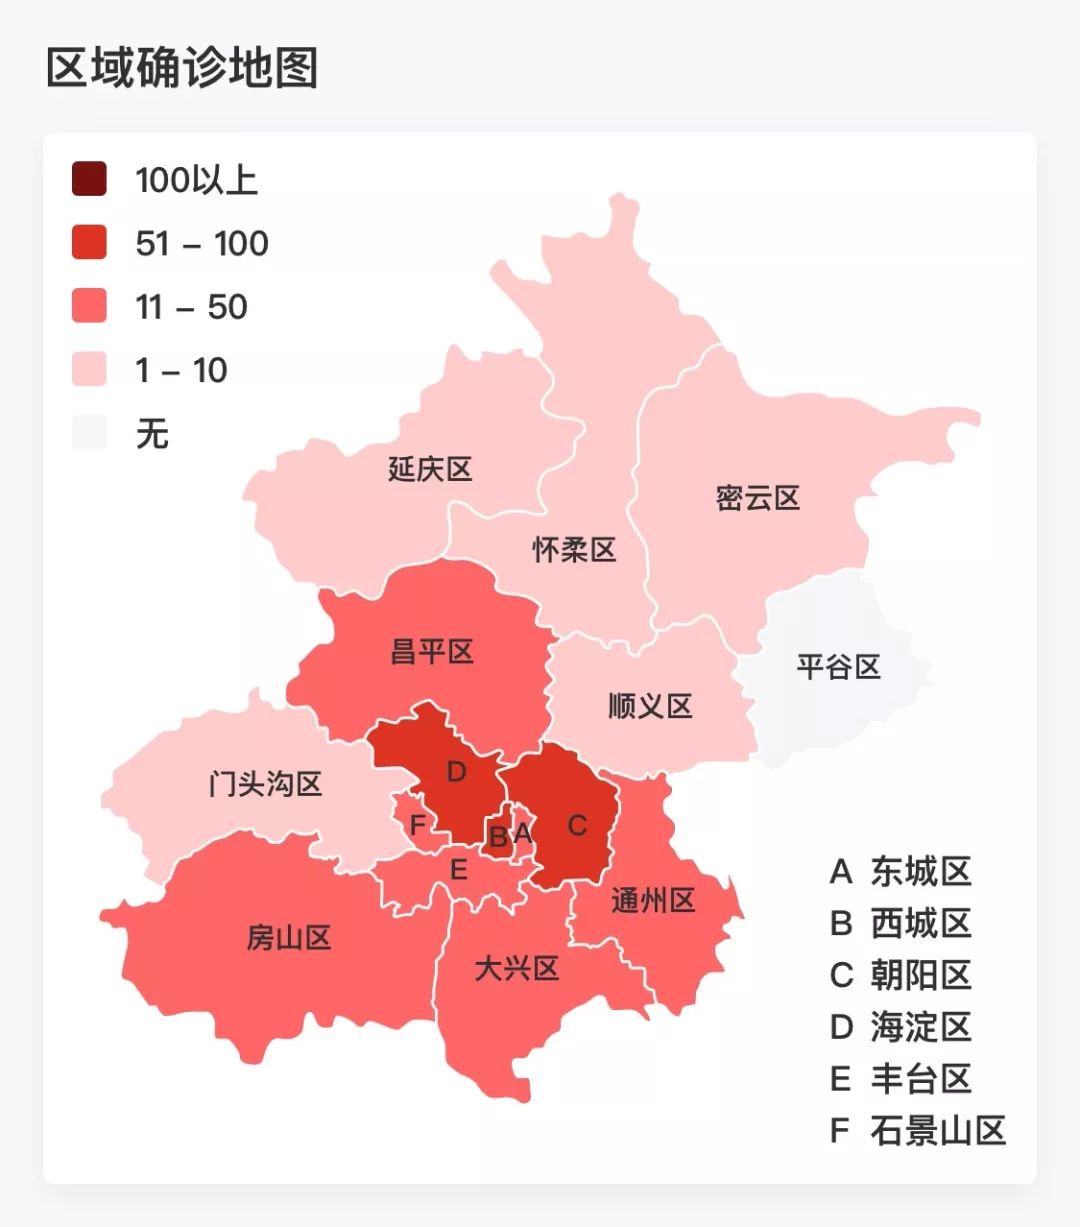 新增4个小区!北京疫情小区地图更新!附死亡病例